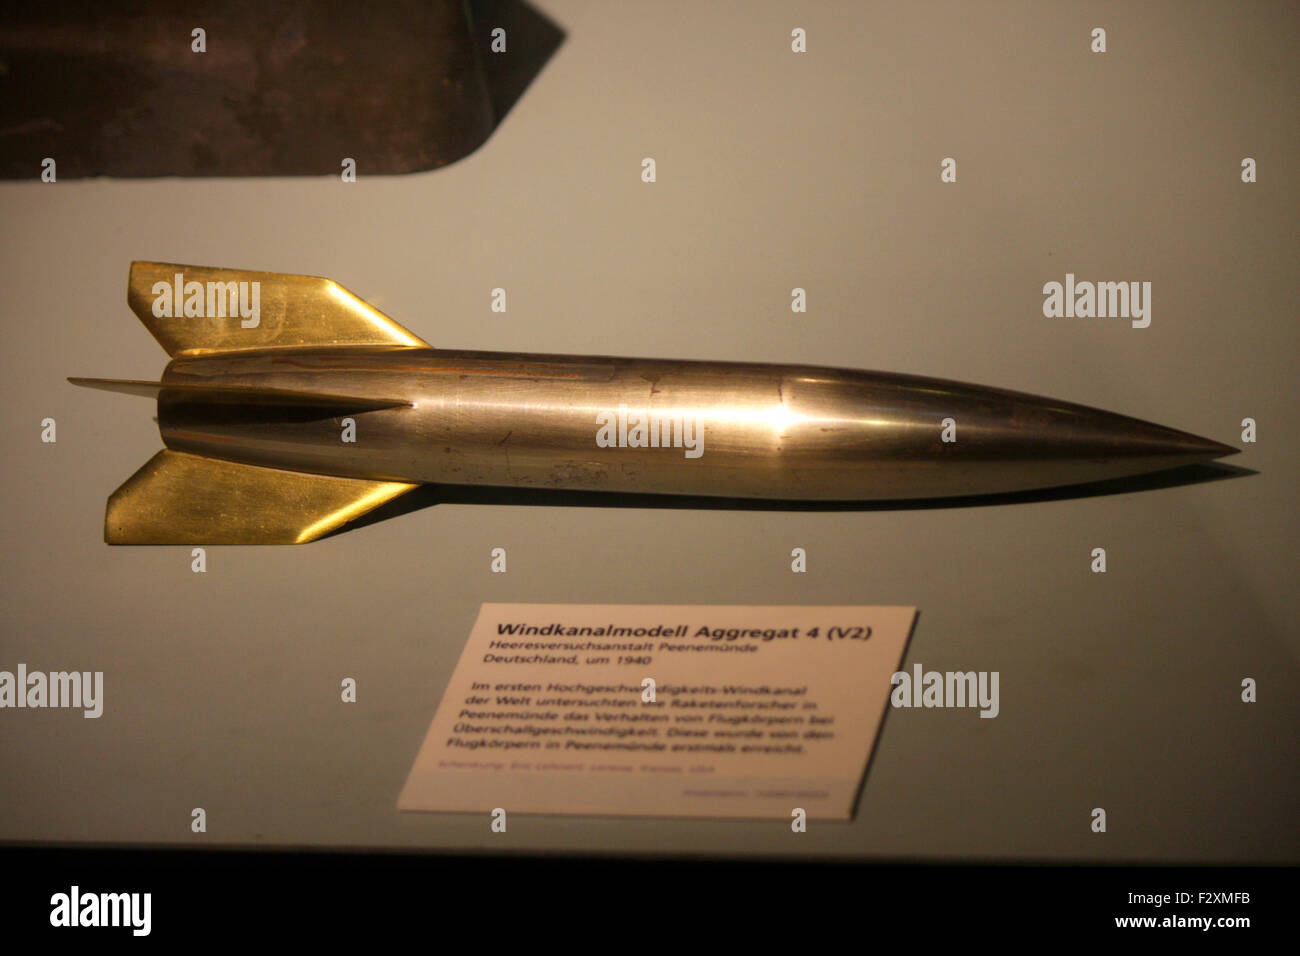 historischer Raketen Dummy fuer den Windkanal - Deutsches Technikmuseum, Berlin-Kreuzberg. Stock Photo